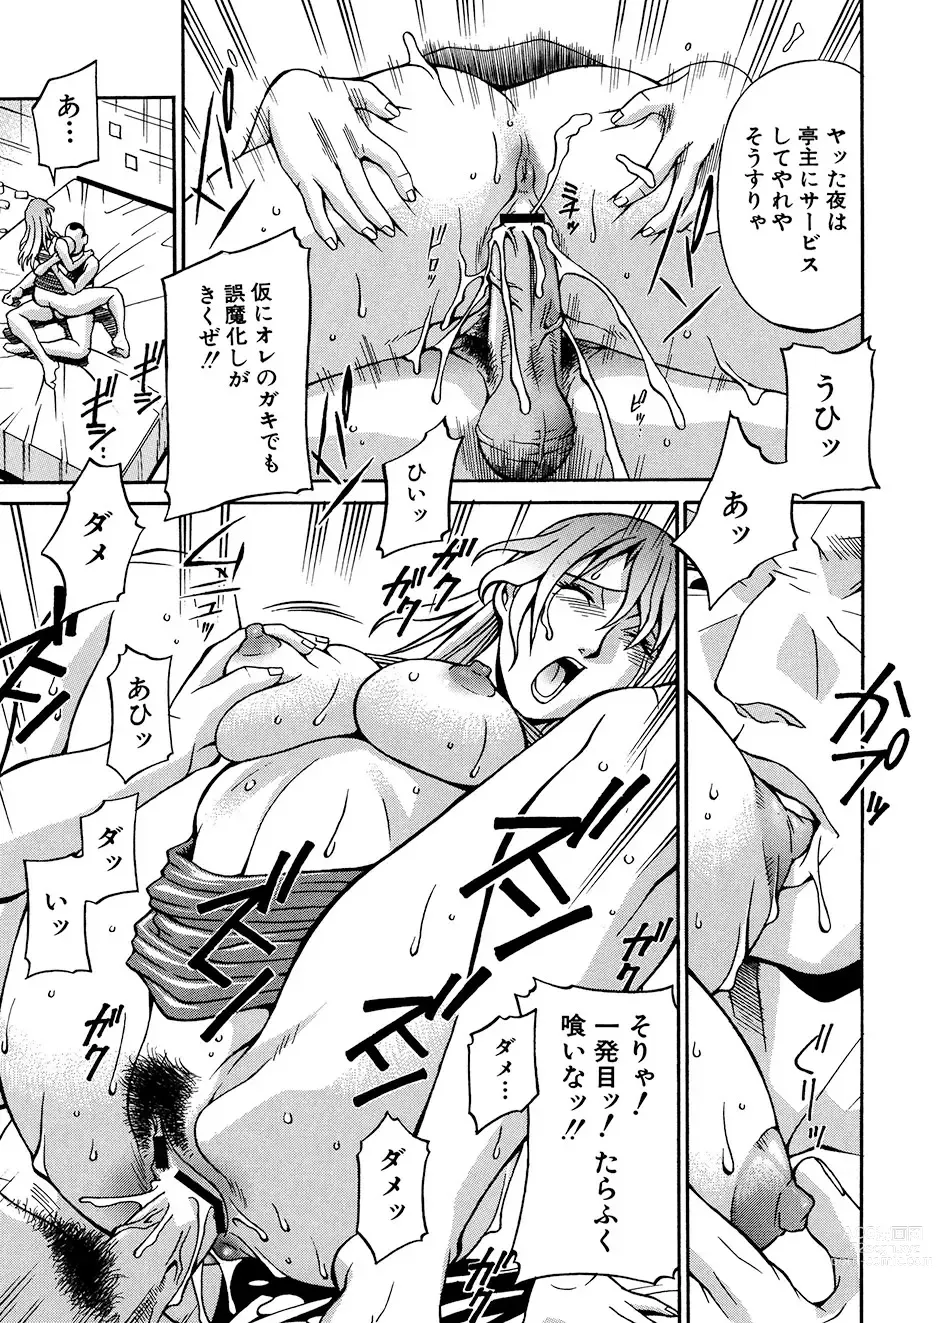 Page 18 of manga Mechiku